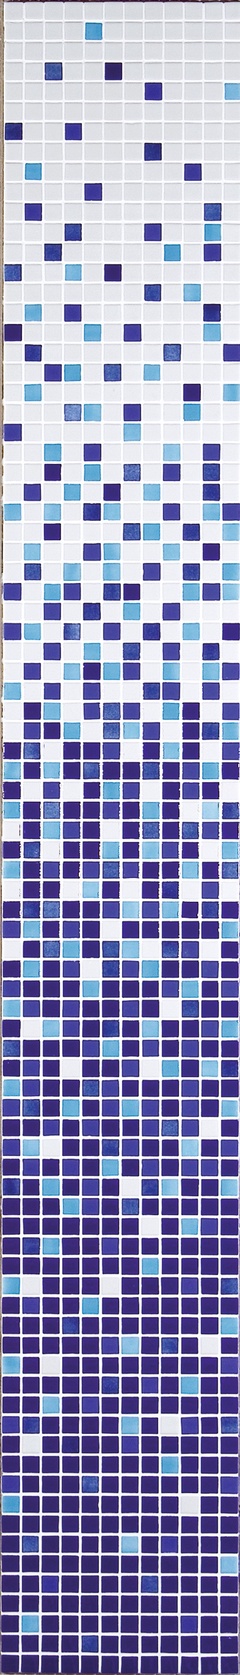 Растяжка из мозаики (8 шт) цвет фиолетовый ZZ|32,7х261,6